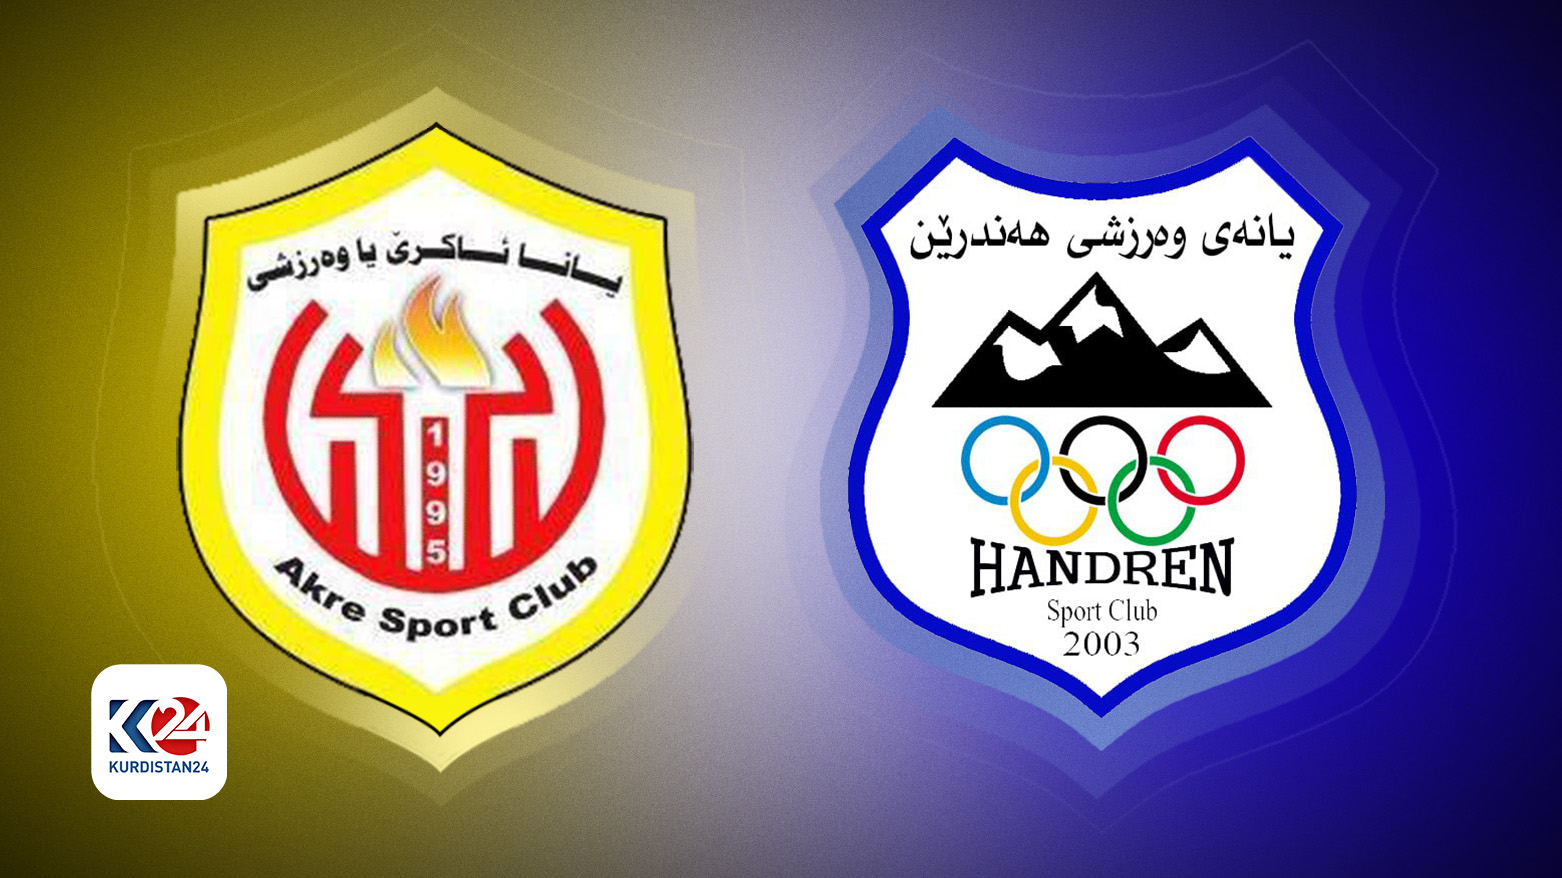 Akre SC vs Handren SC clash in final showdown for Kurdistan cup title